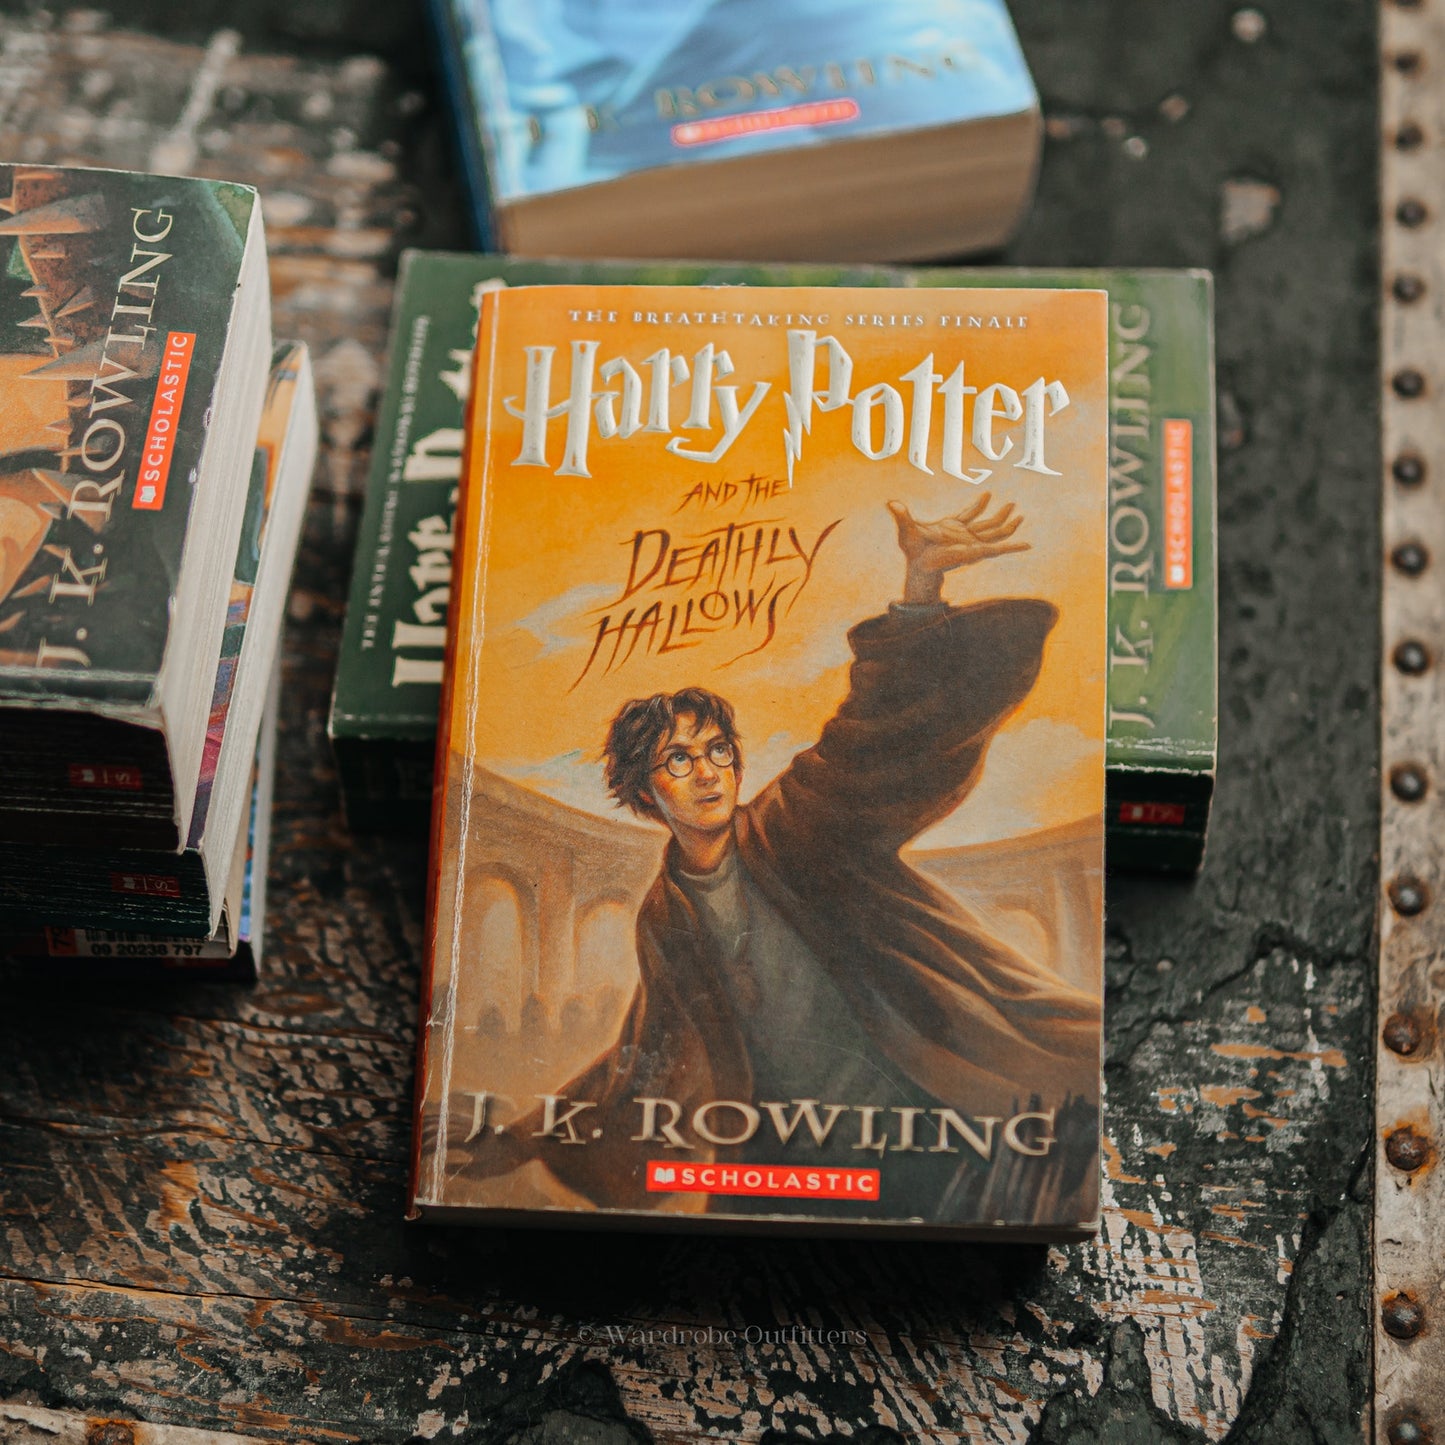 Harry Potter Paperback Set by J. K. Rowling (Books 1-7)